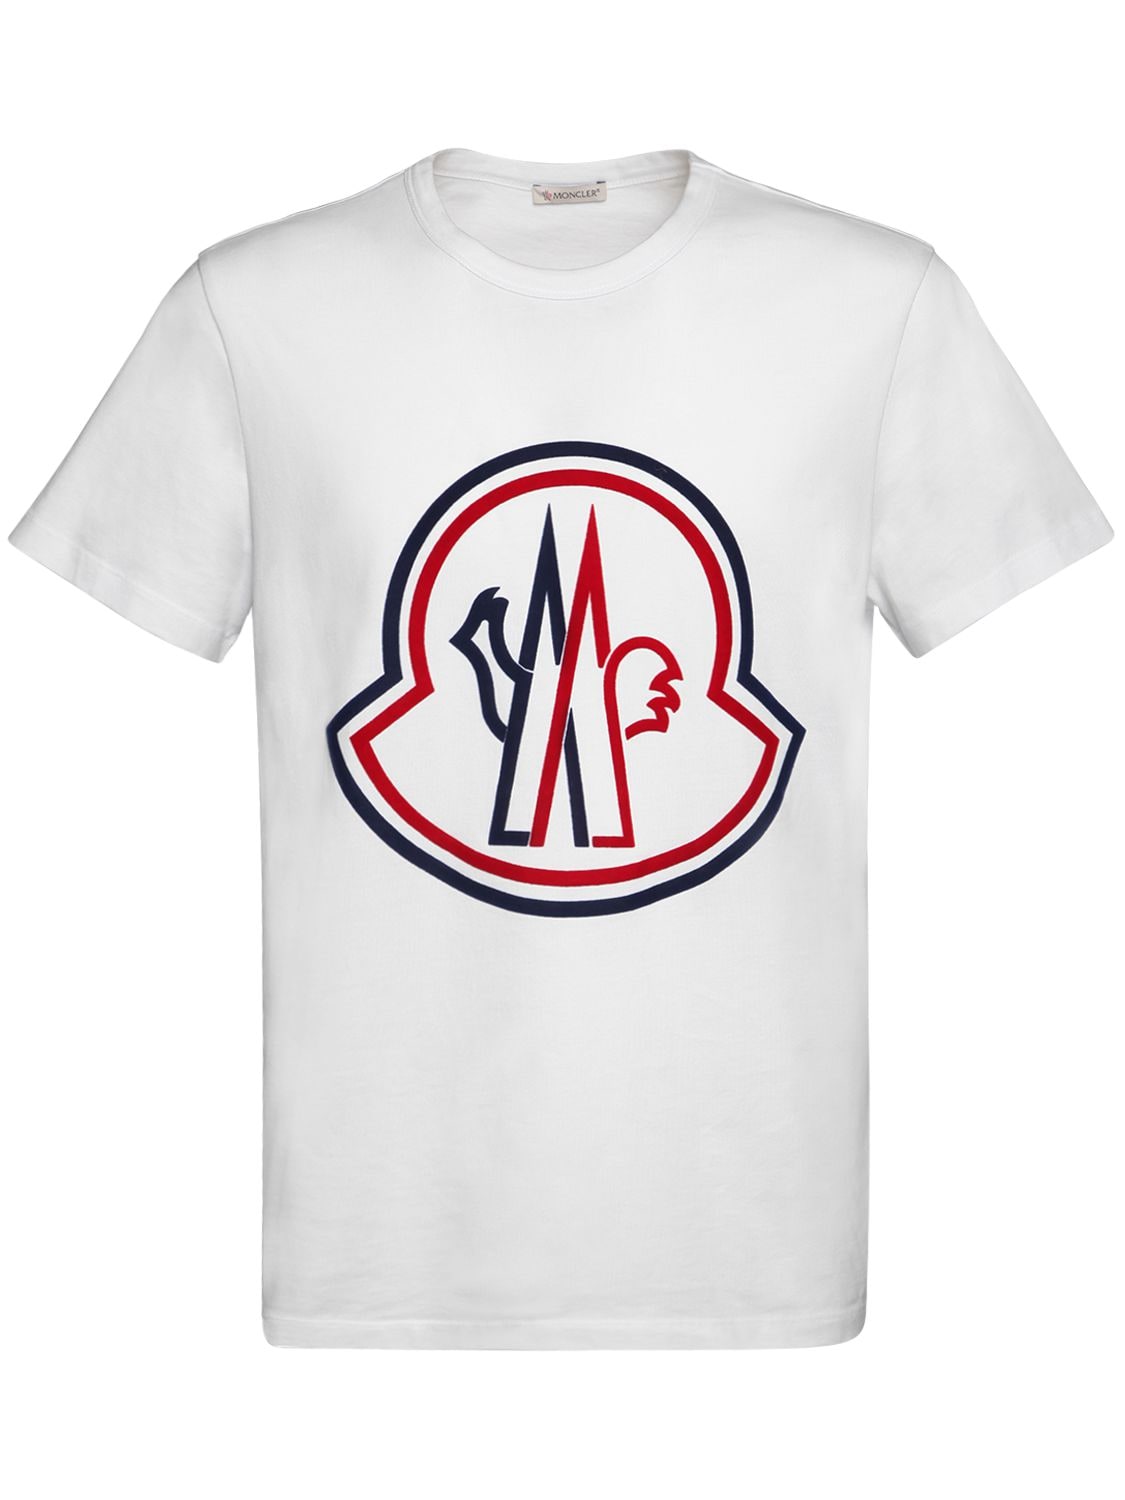 moncler t shirt with big logo